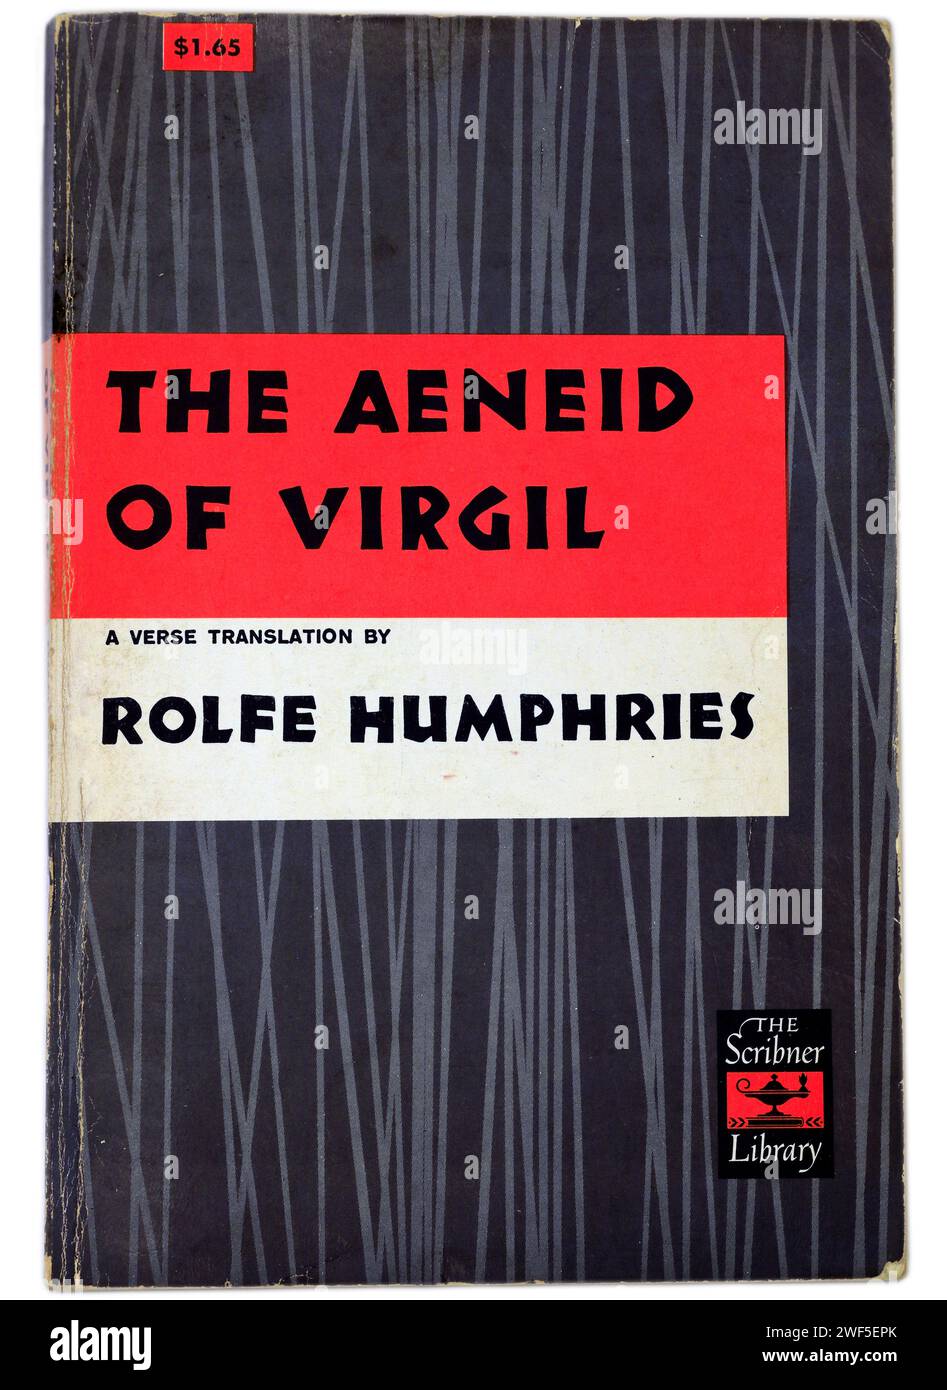 L'Eneide di Virgilio. Traduzione di Rolfe Humphries. Copertina del libro su sfondo chiaro/bianco. Foto Stock